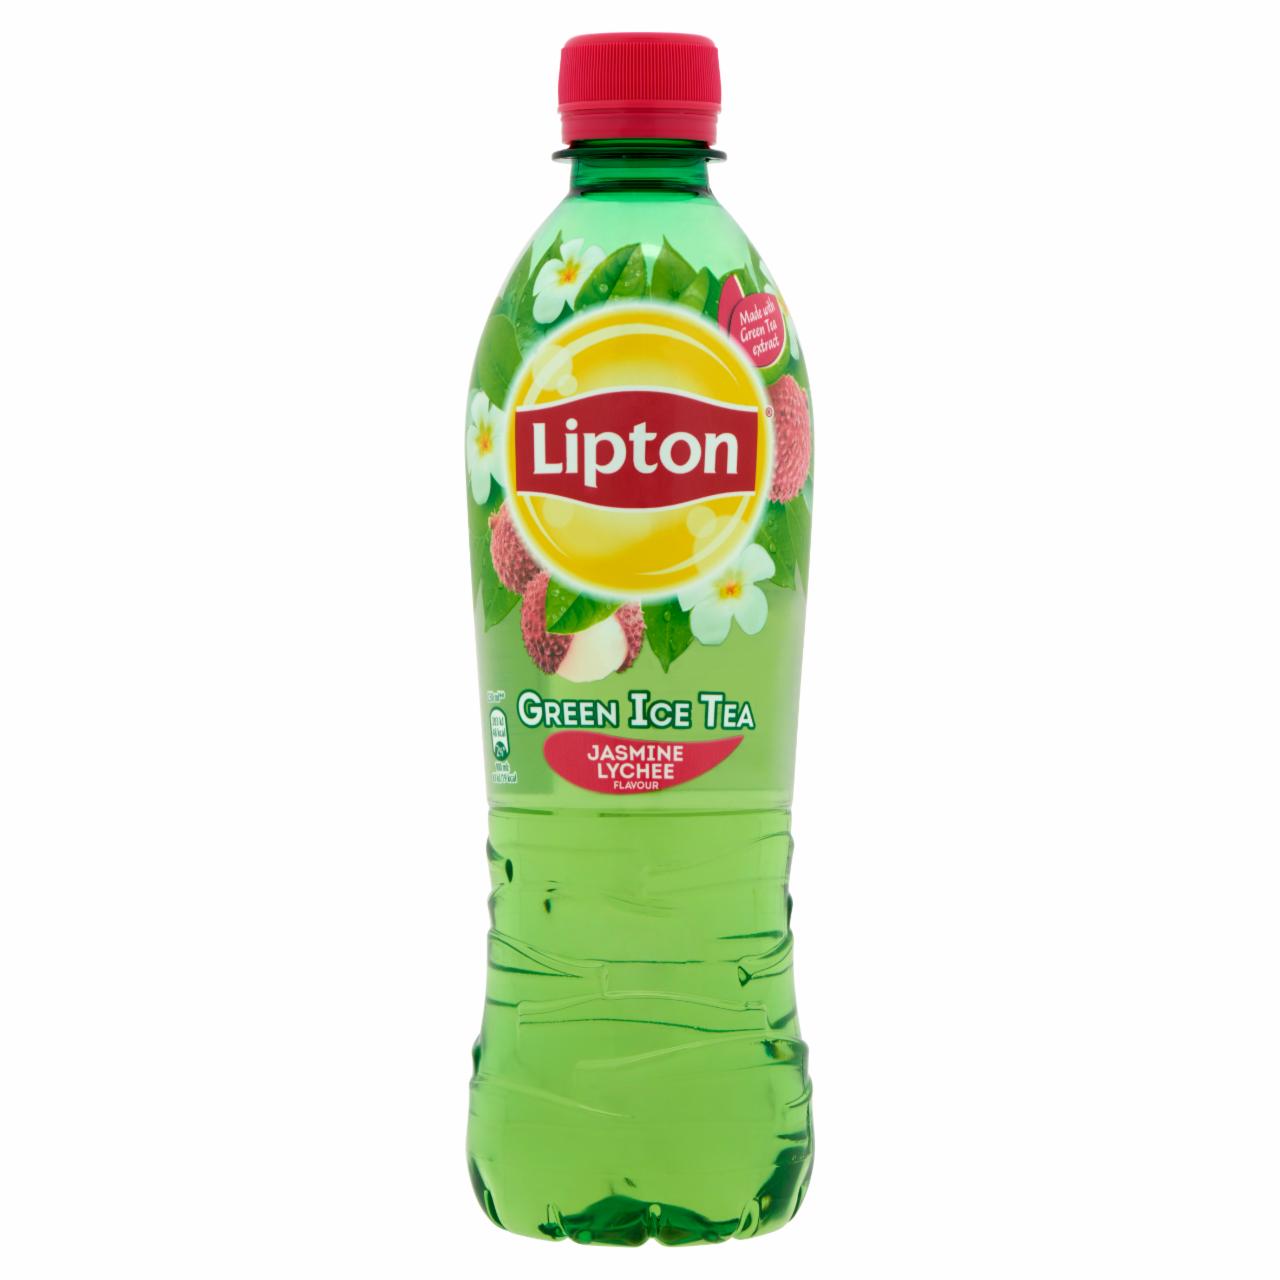 Képek - Lipton Green Ice Tea csökkentett energiatartalmú jázmin és licsi ízű szénsavmentes üdítőital 500 ml